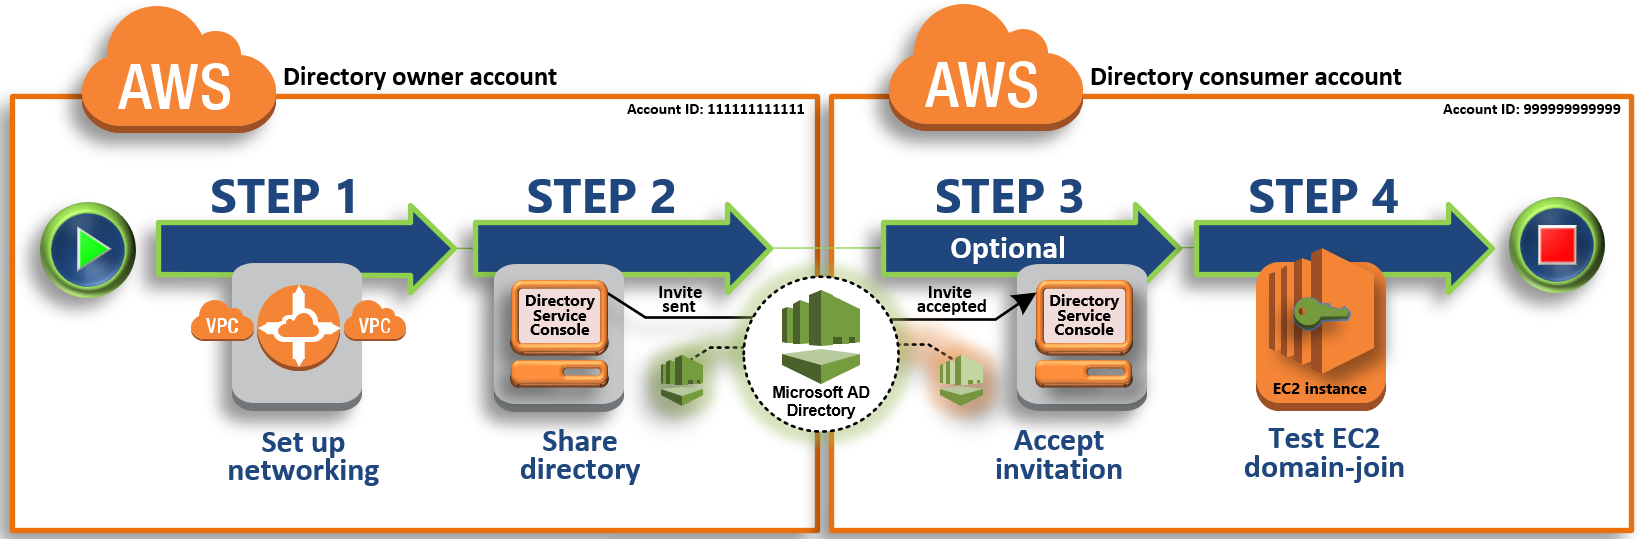 共享 AWS 托管 Microsoft AD 的步骤：设置您的网络环境，共享您的目录，接受共享目录邀请，并测试将适用于 Windows Server 的 Amazon EC2 实例无缝加入域。